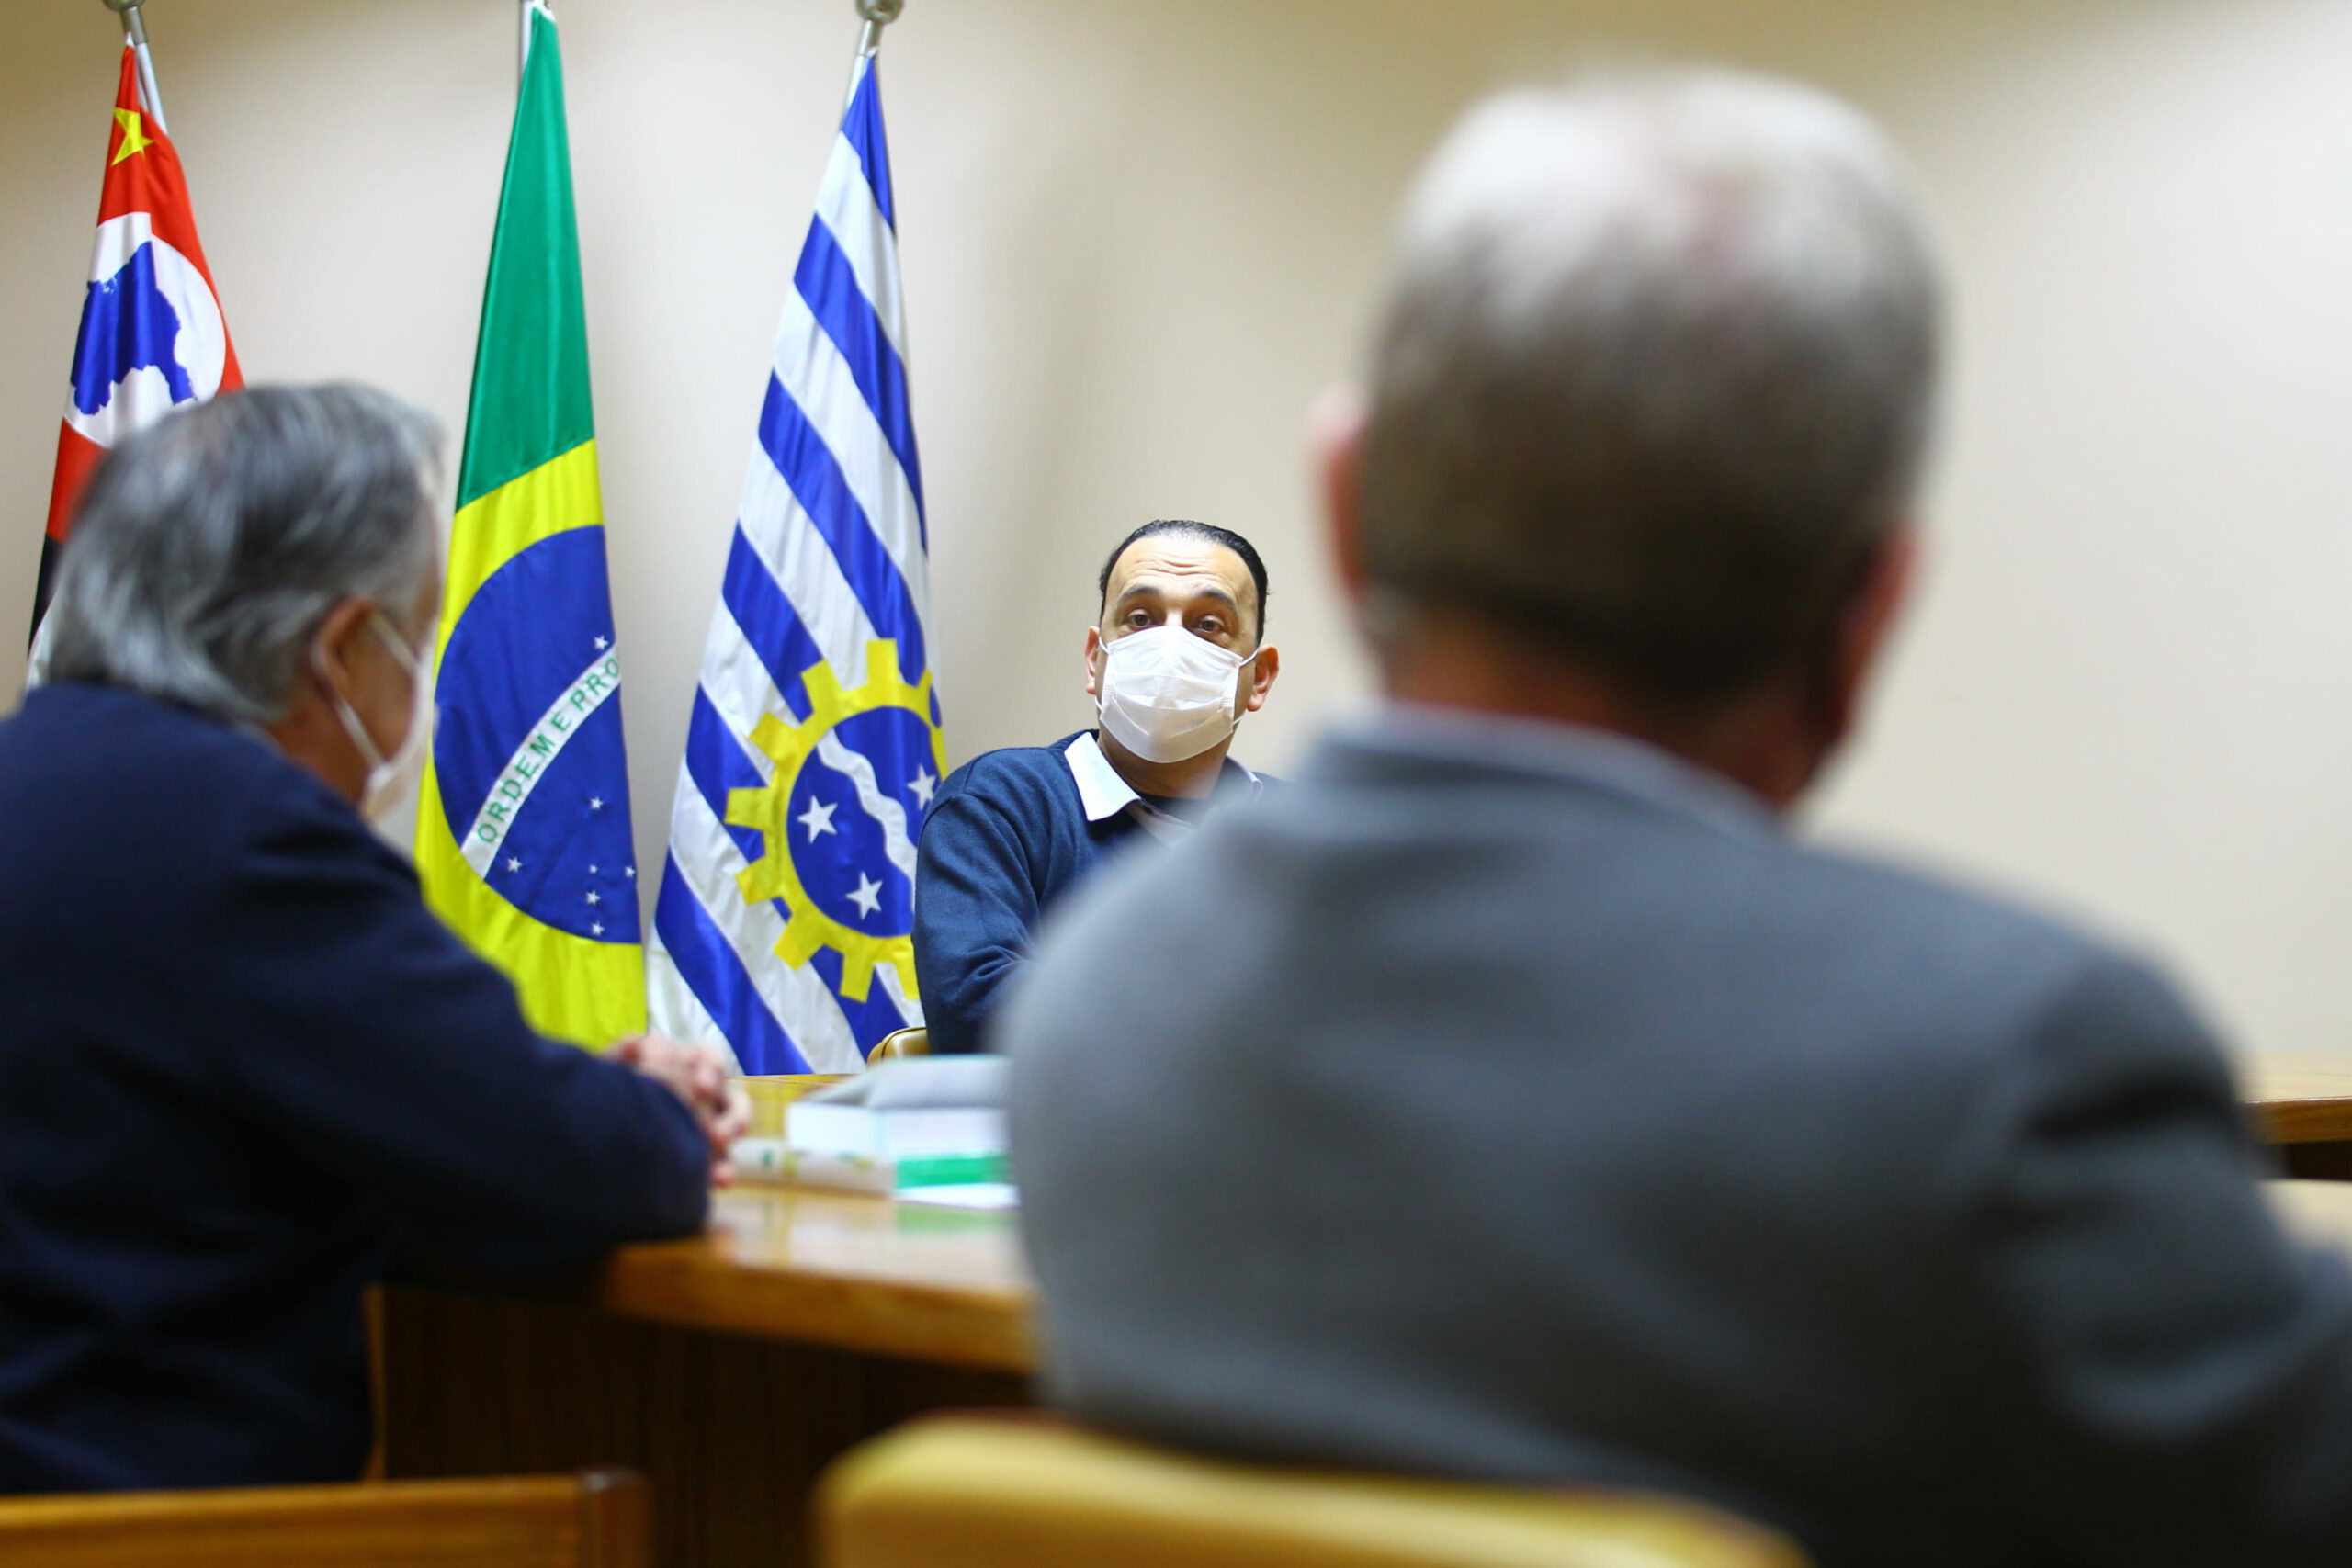 Prefeito de São José dos Campos sentado ao fundo em destaque em frente as bandeiras da cidade, do estado e do Brasil, e aparecem sentados de costas o presidente e o vice-presidente do CRMV-SP